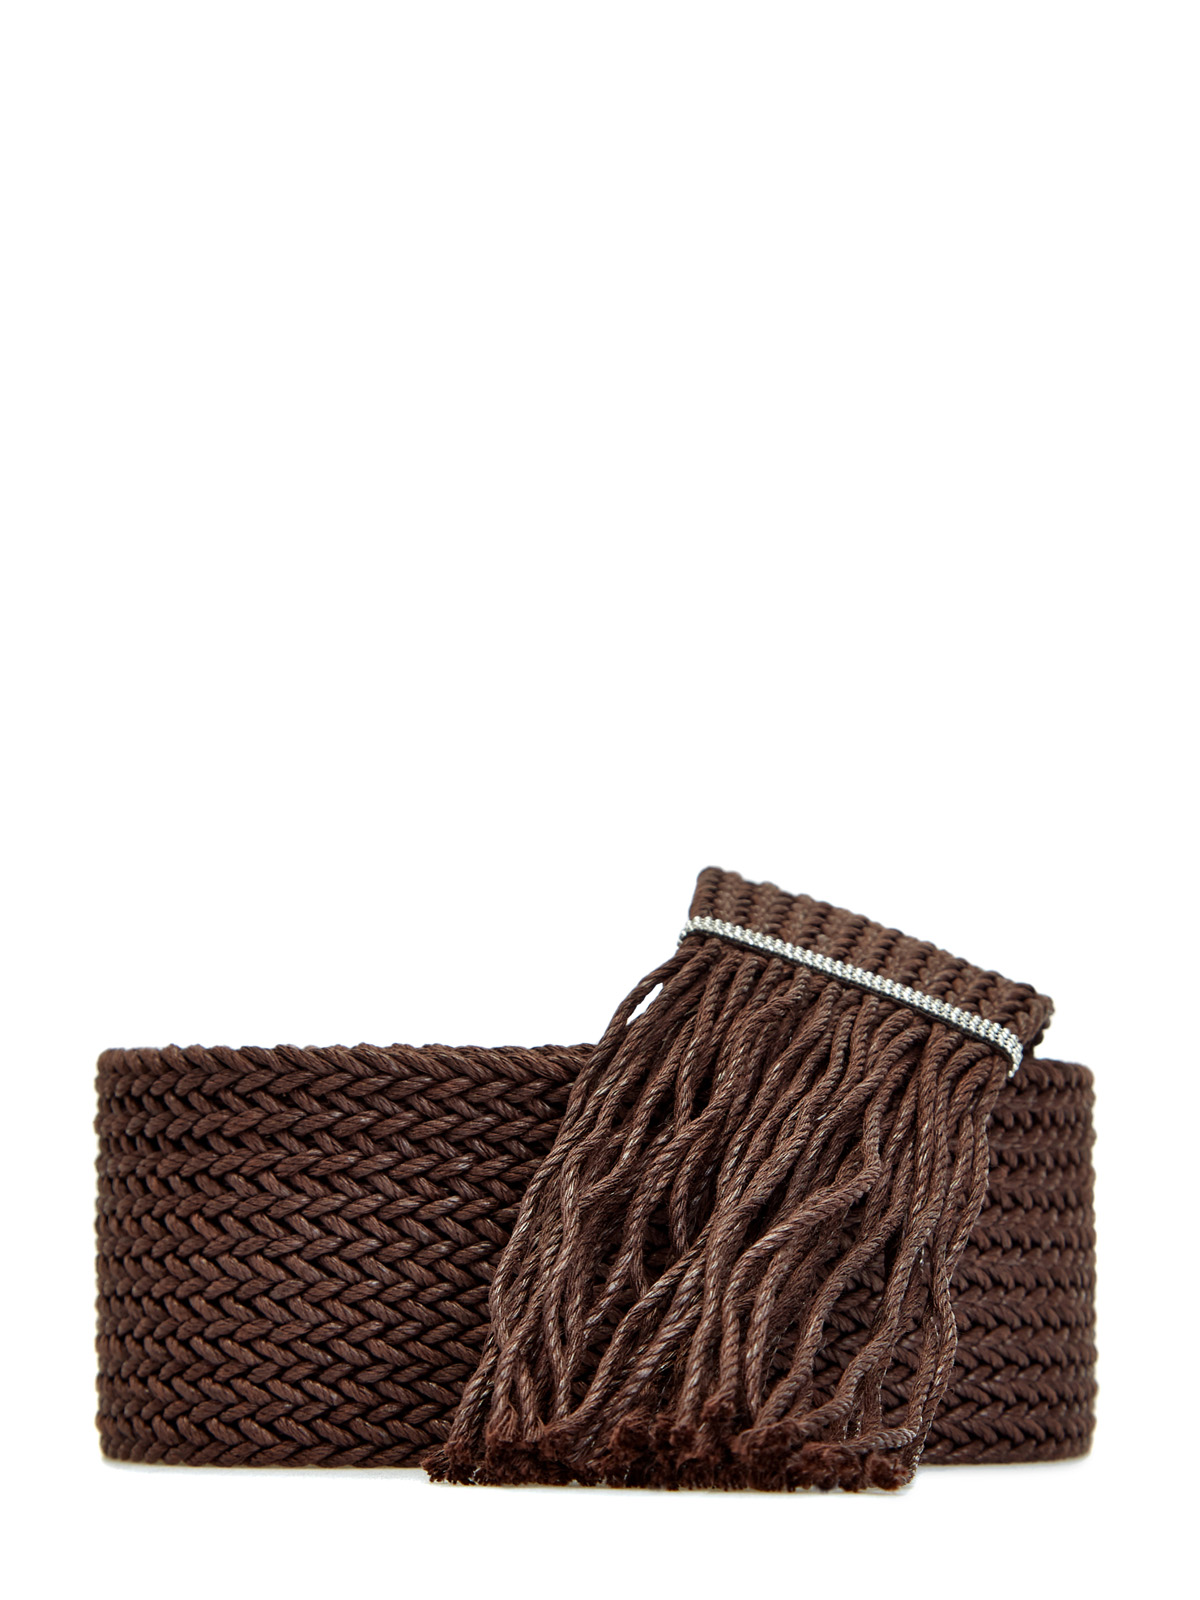 Пояс в технике плетения с ювелирной деталью Punto Luce PESERICO, цвет коричневый, размер 45;45.5